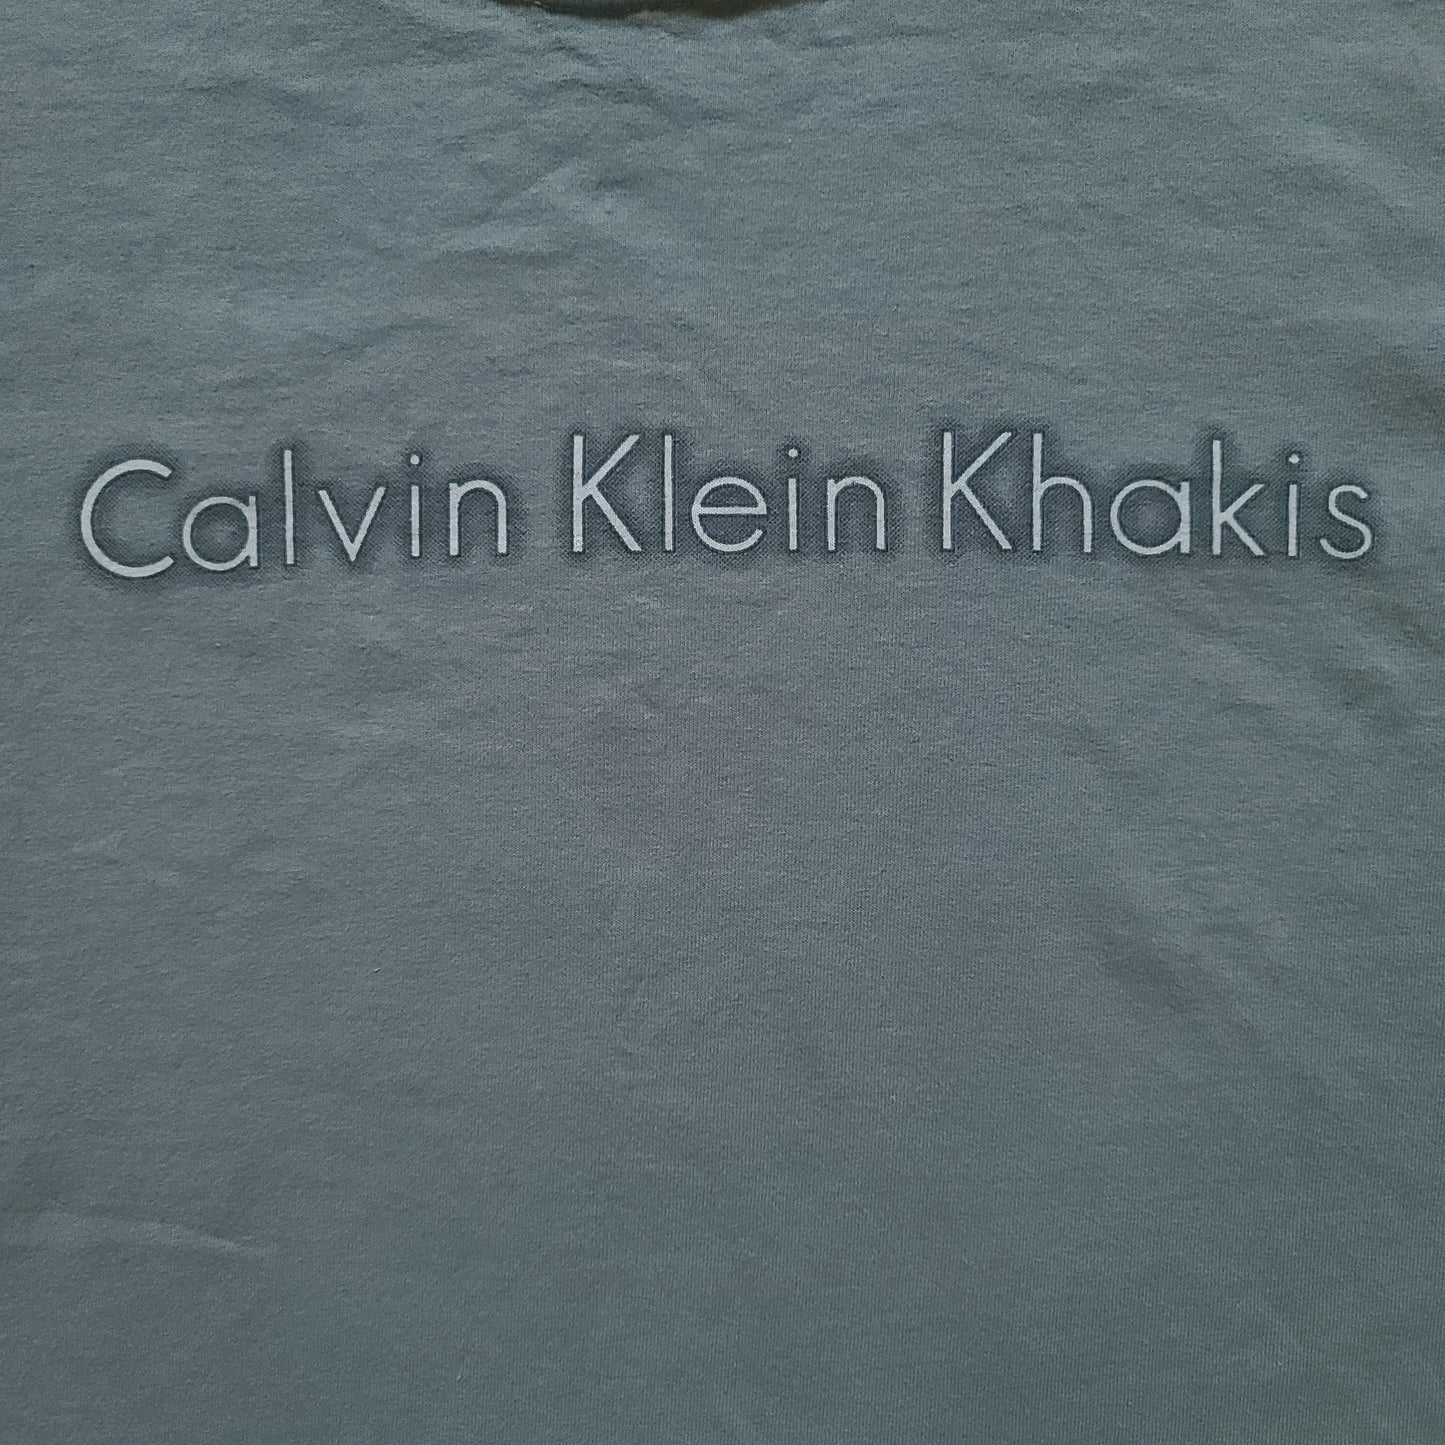 Vintage Calvin Klein Khakis Gray Tee